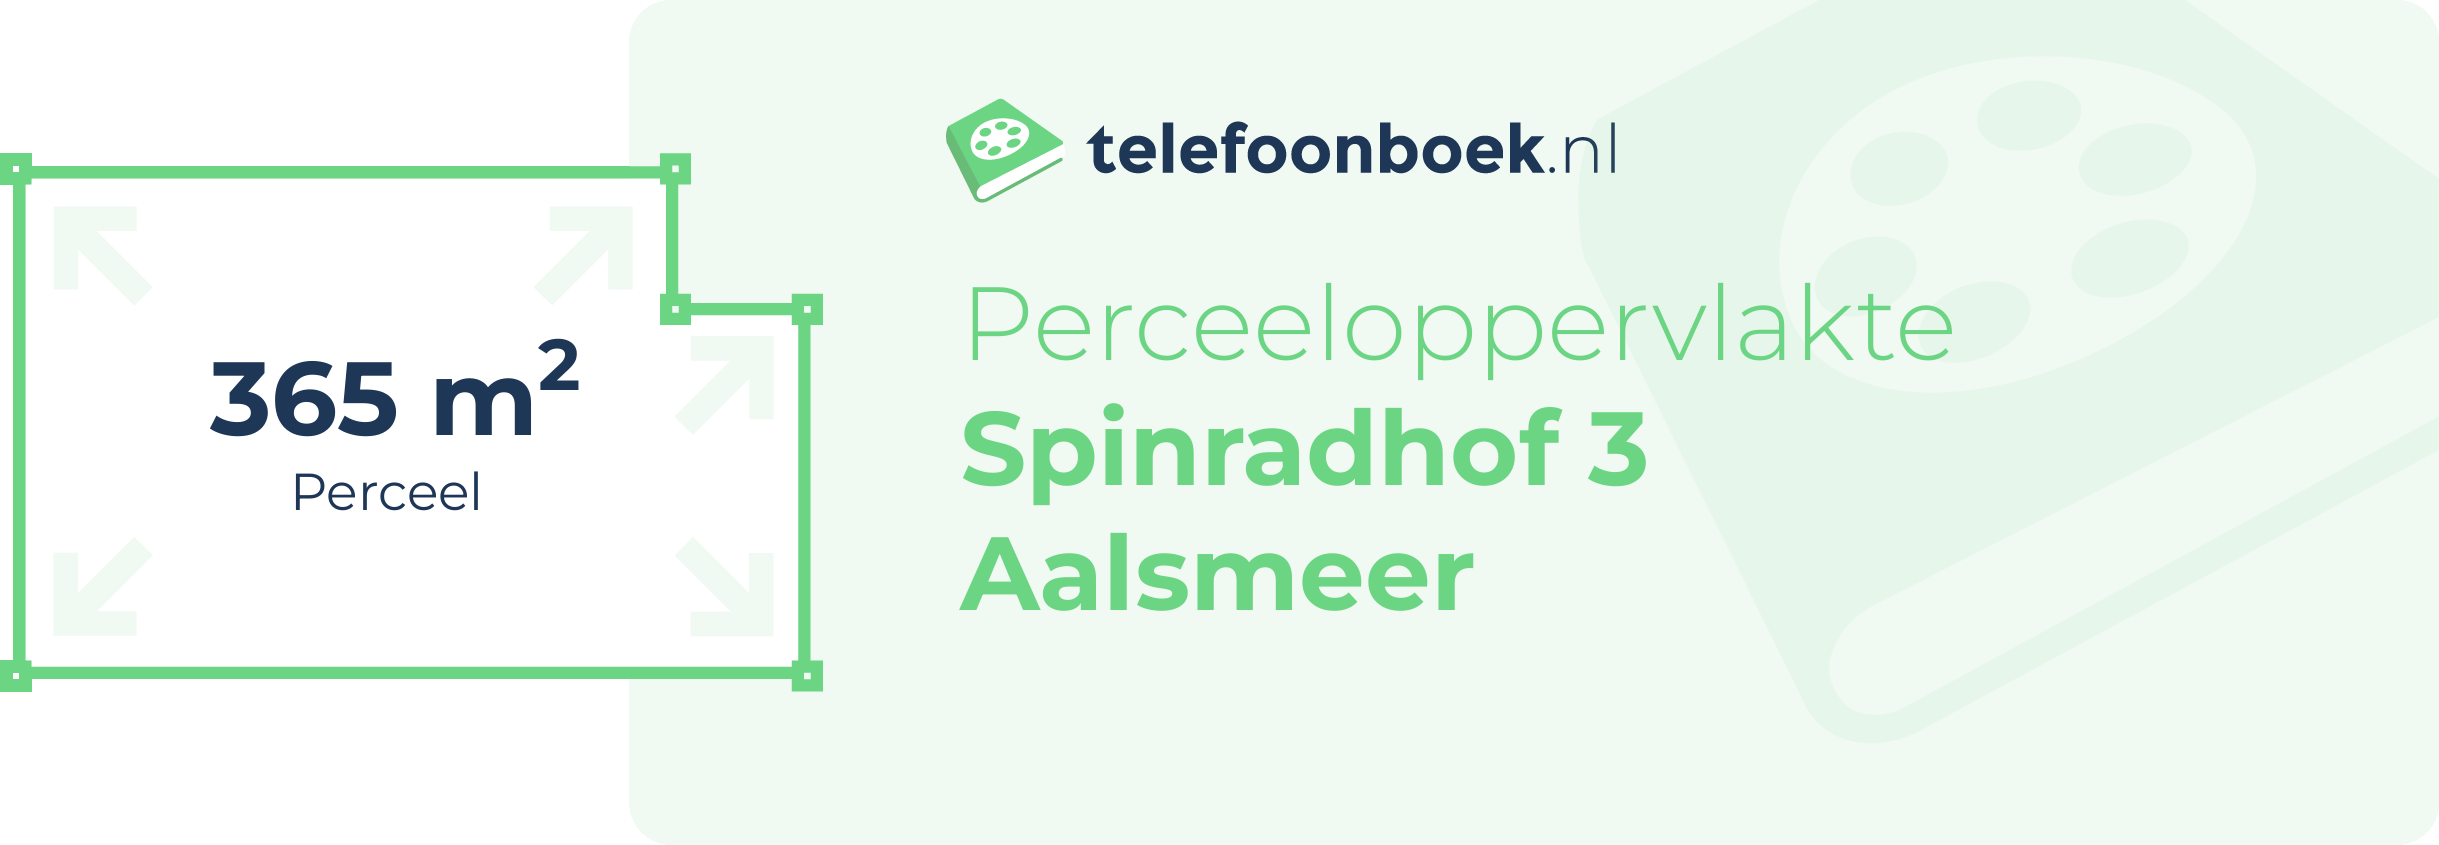 Perceeloppervlakte Spinradhof 3 Aalsmeer